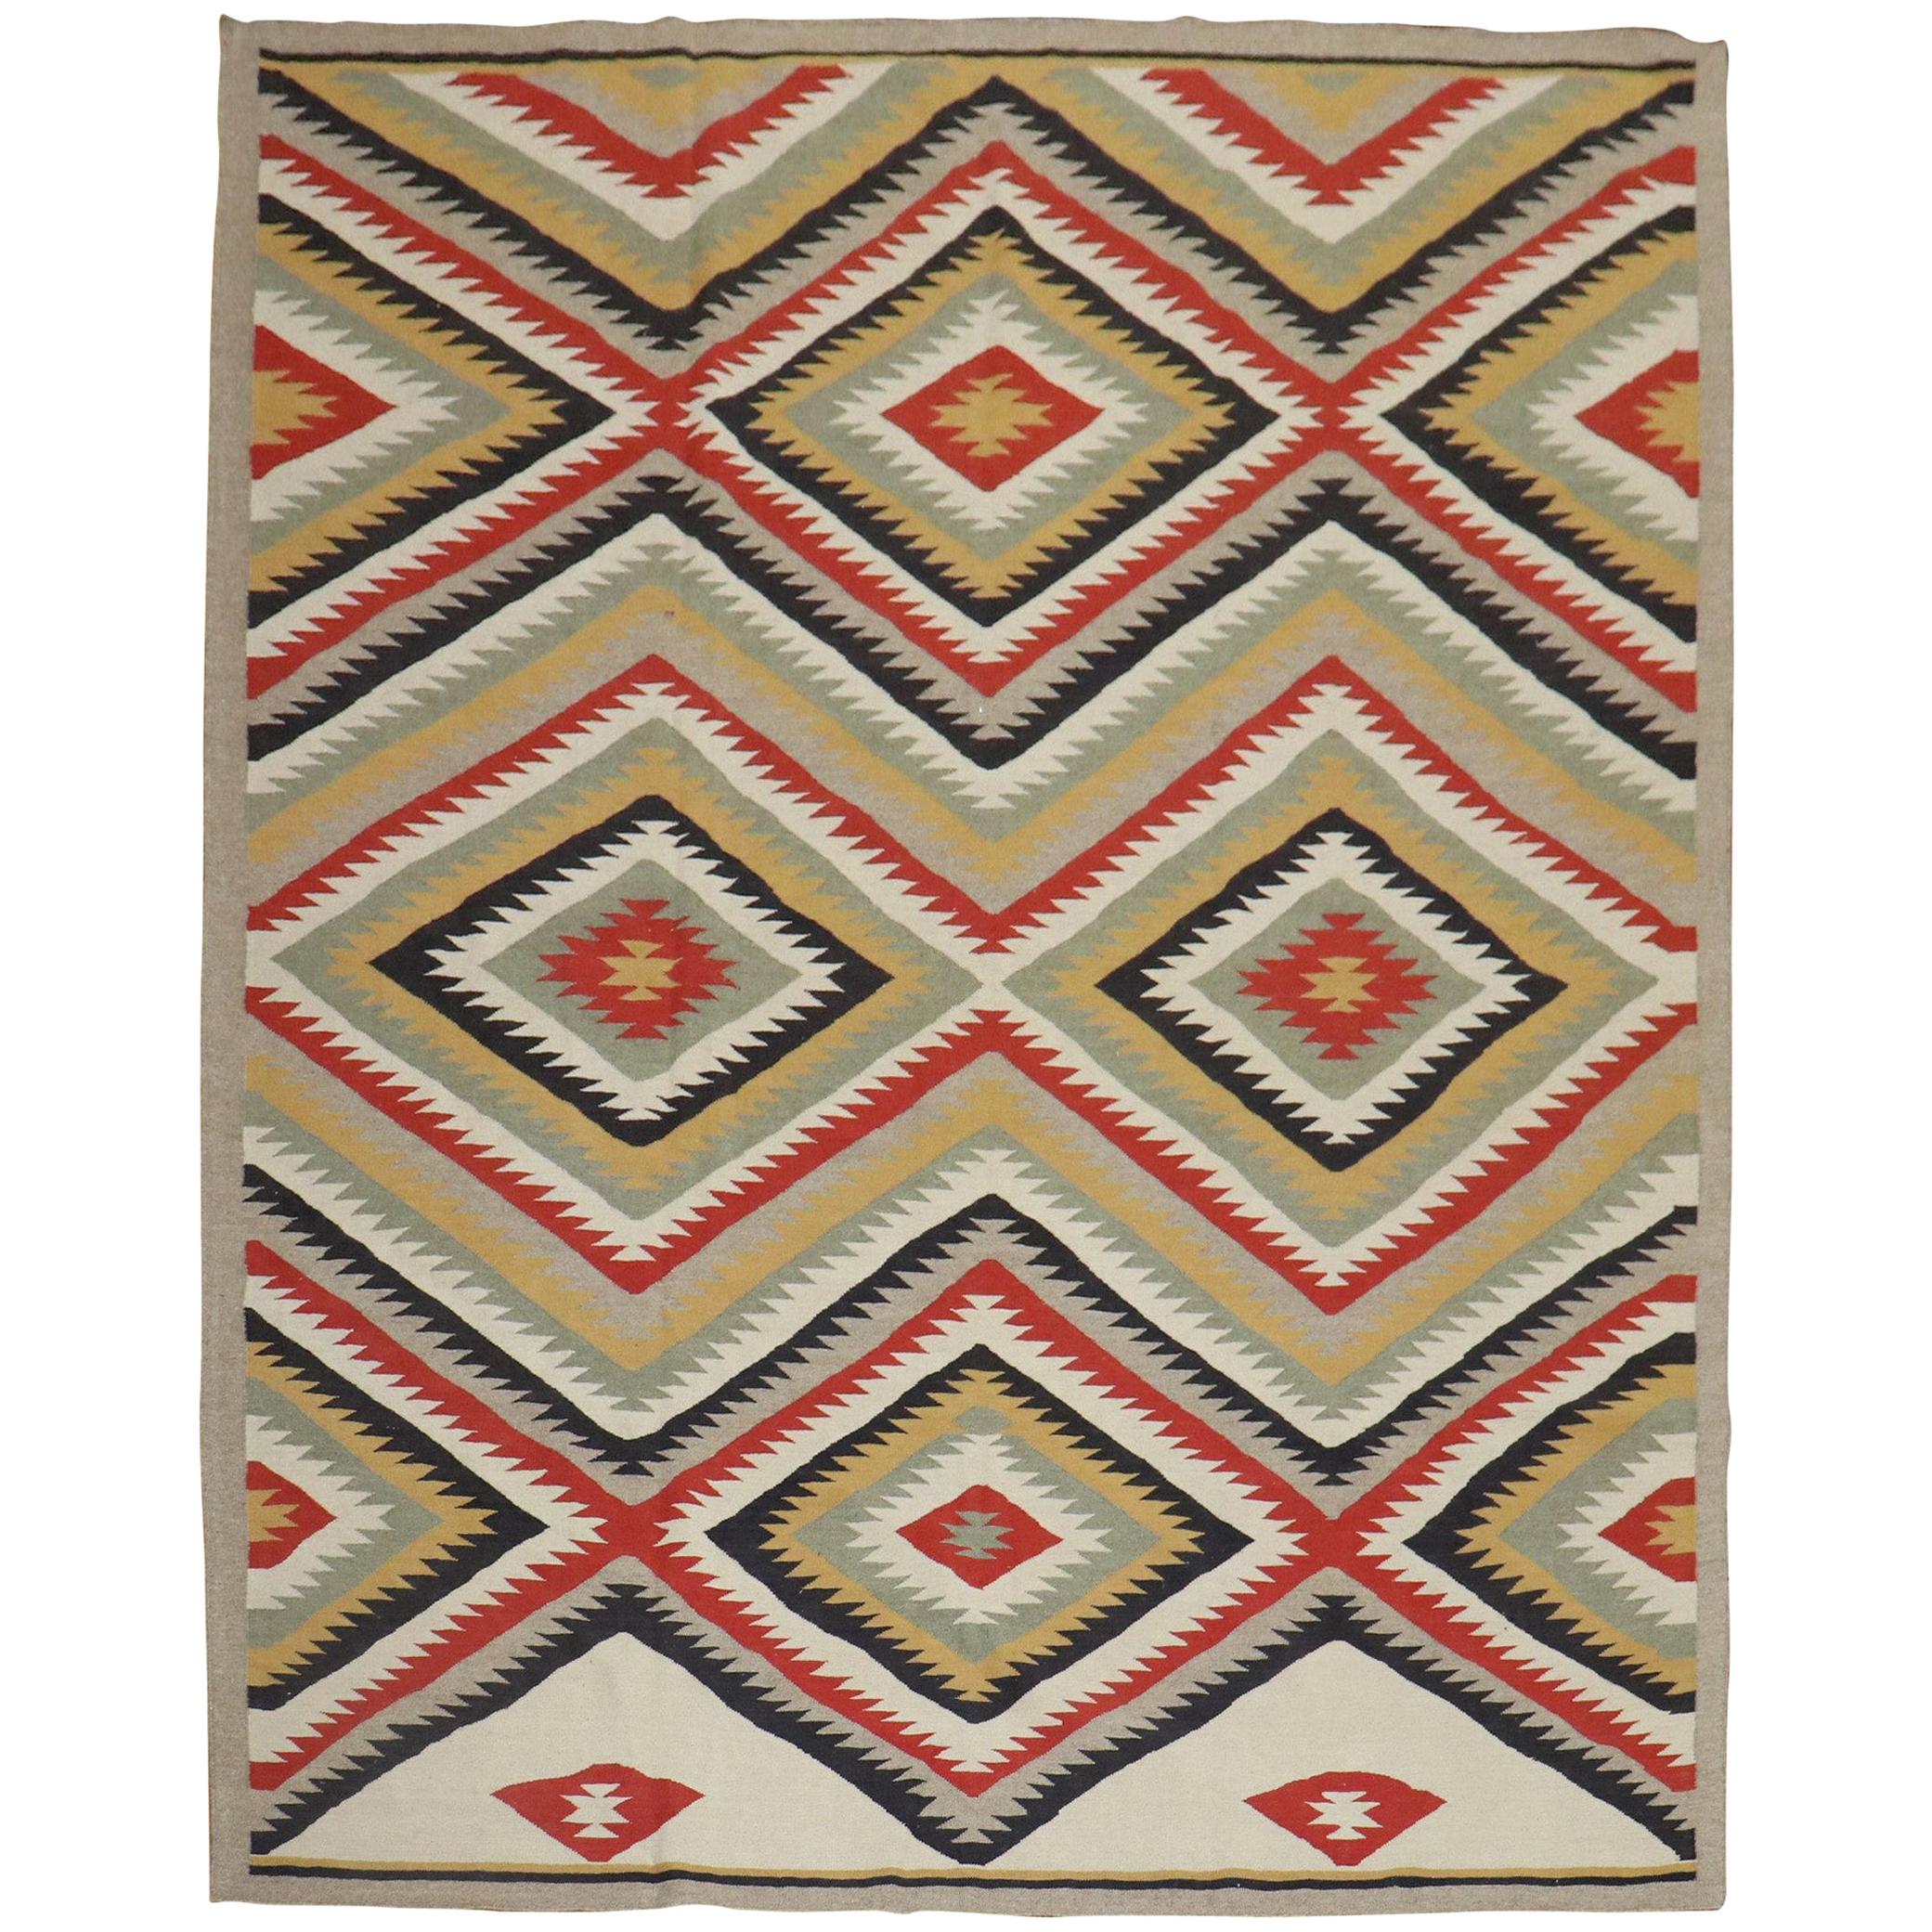 Stammeskunst Navajo Design 21. Jahrhundert Moderner Teppich